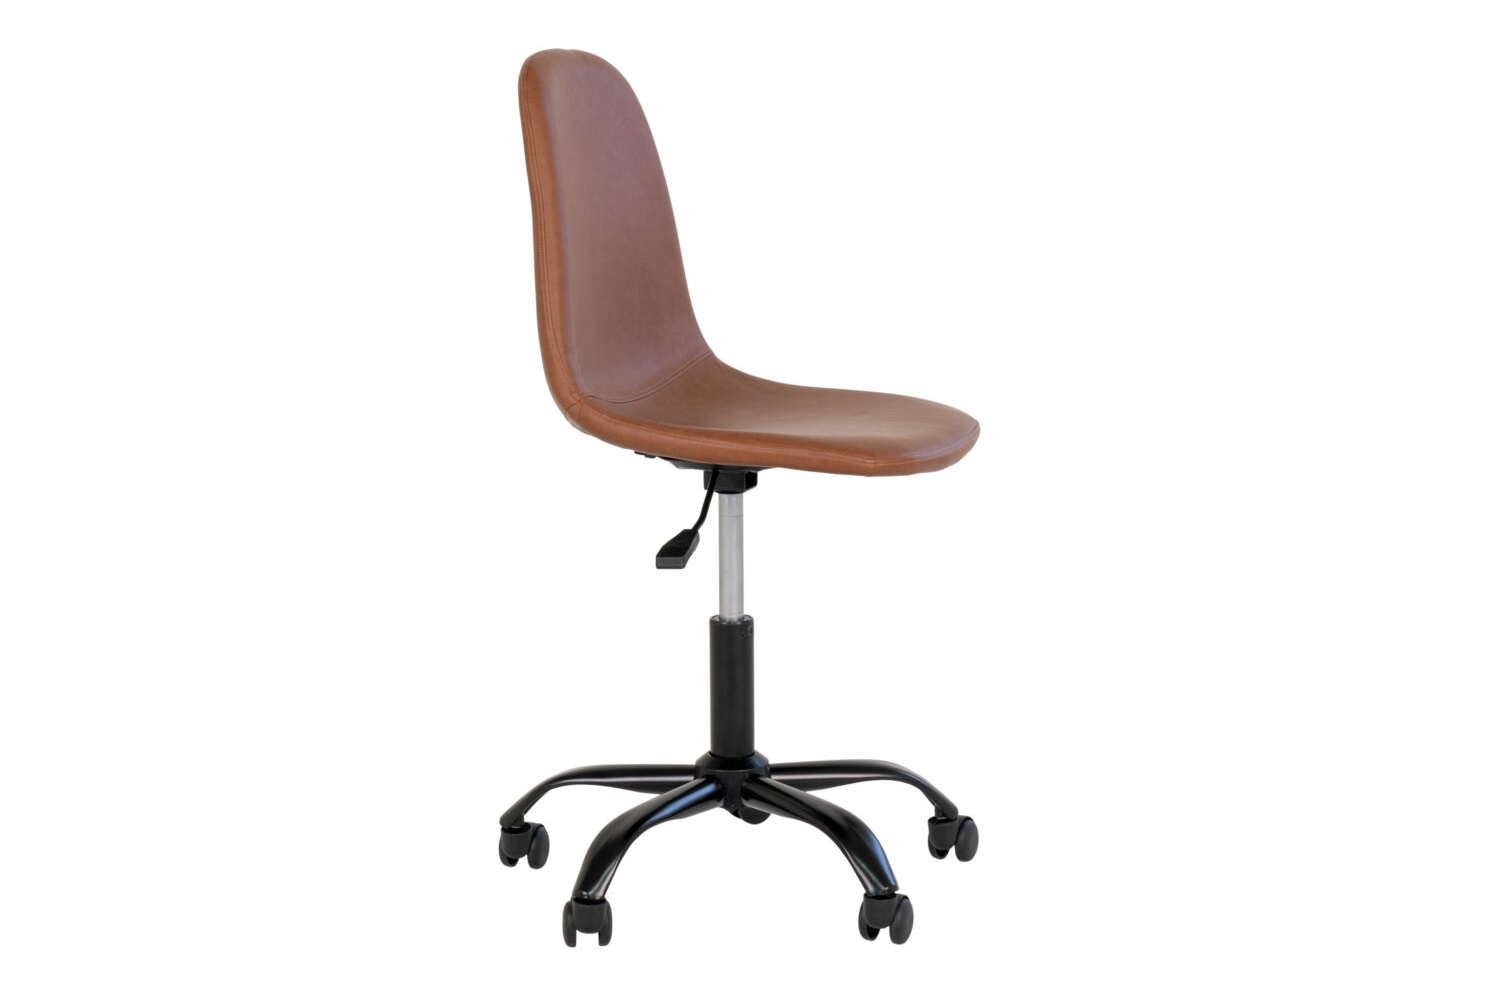 Designová kancelářská židle Myla vintage hnědá